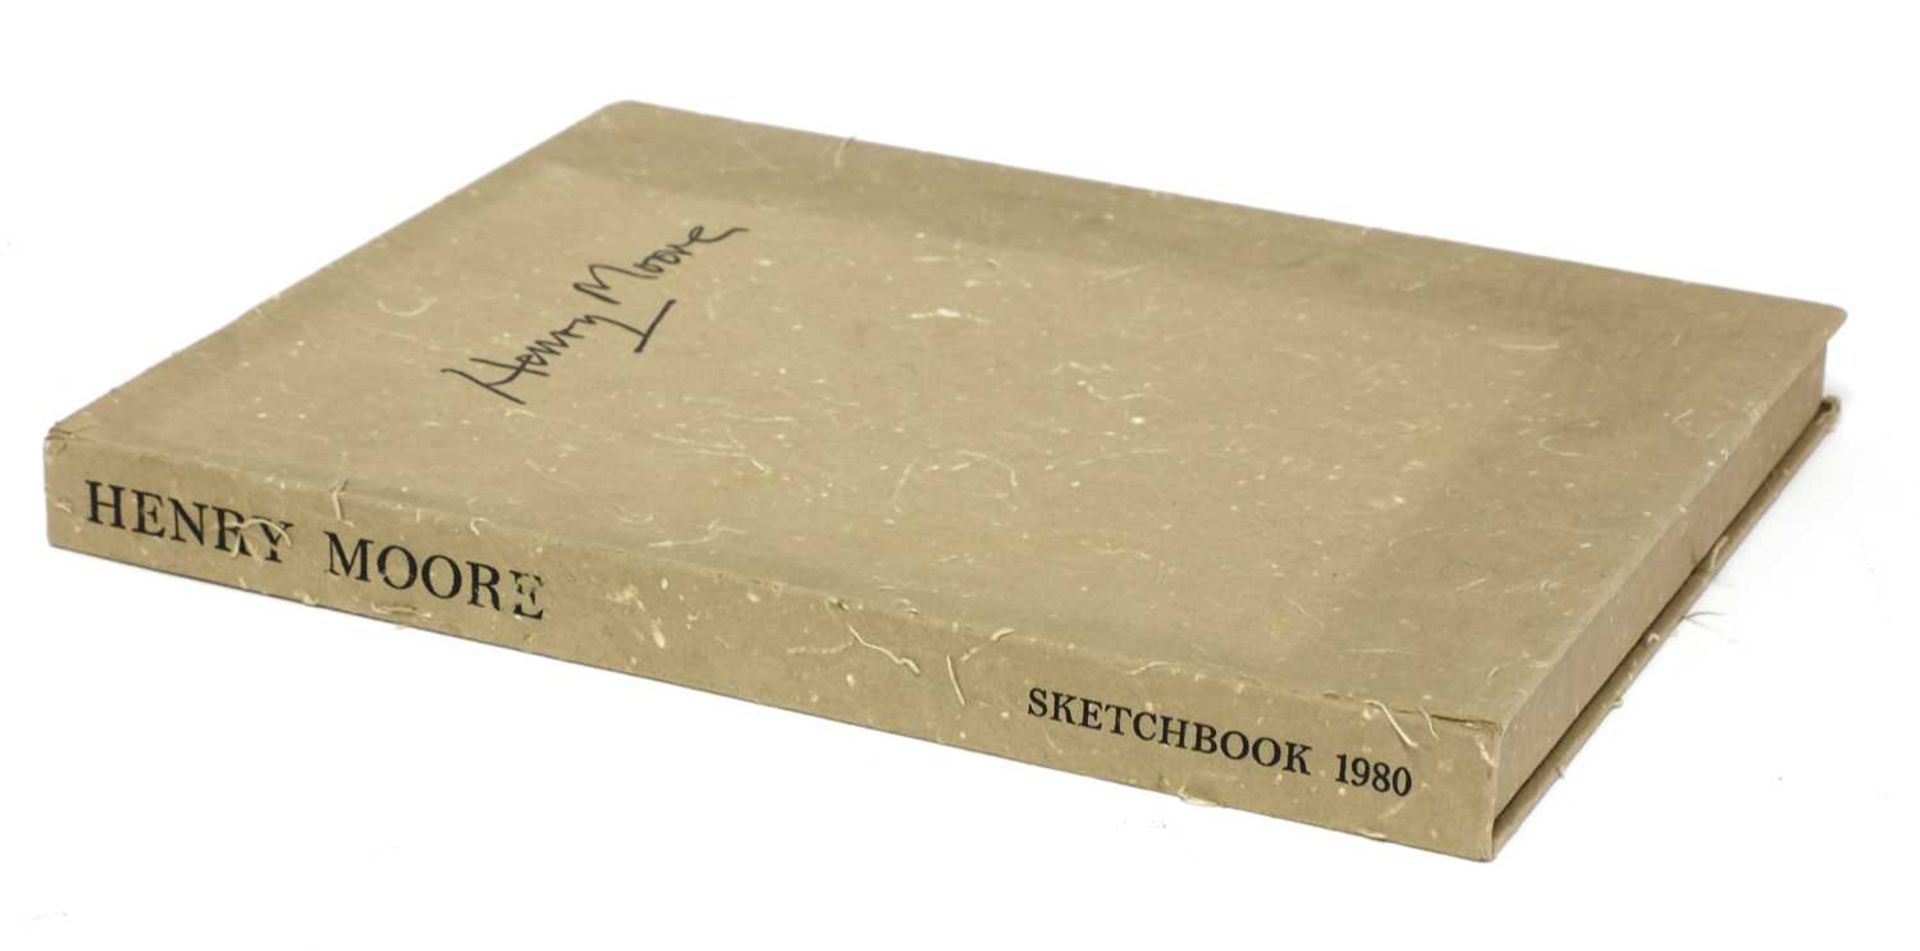 HENRY MOORE: Sketchbook, 1980. - Image 3 of 3